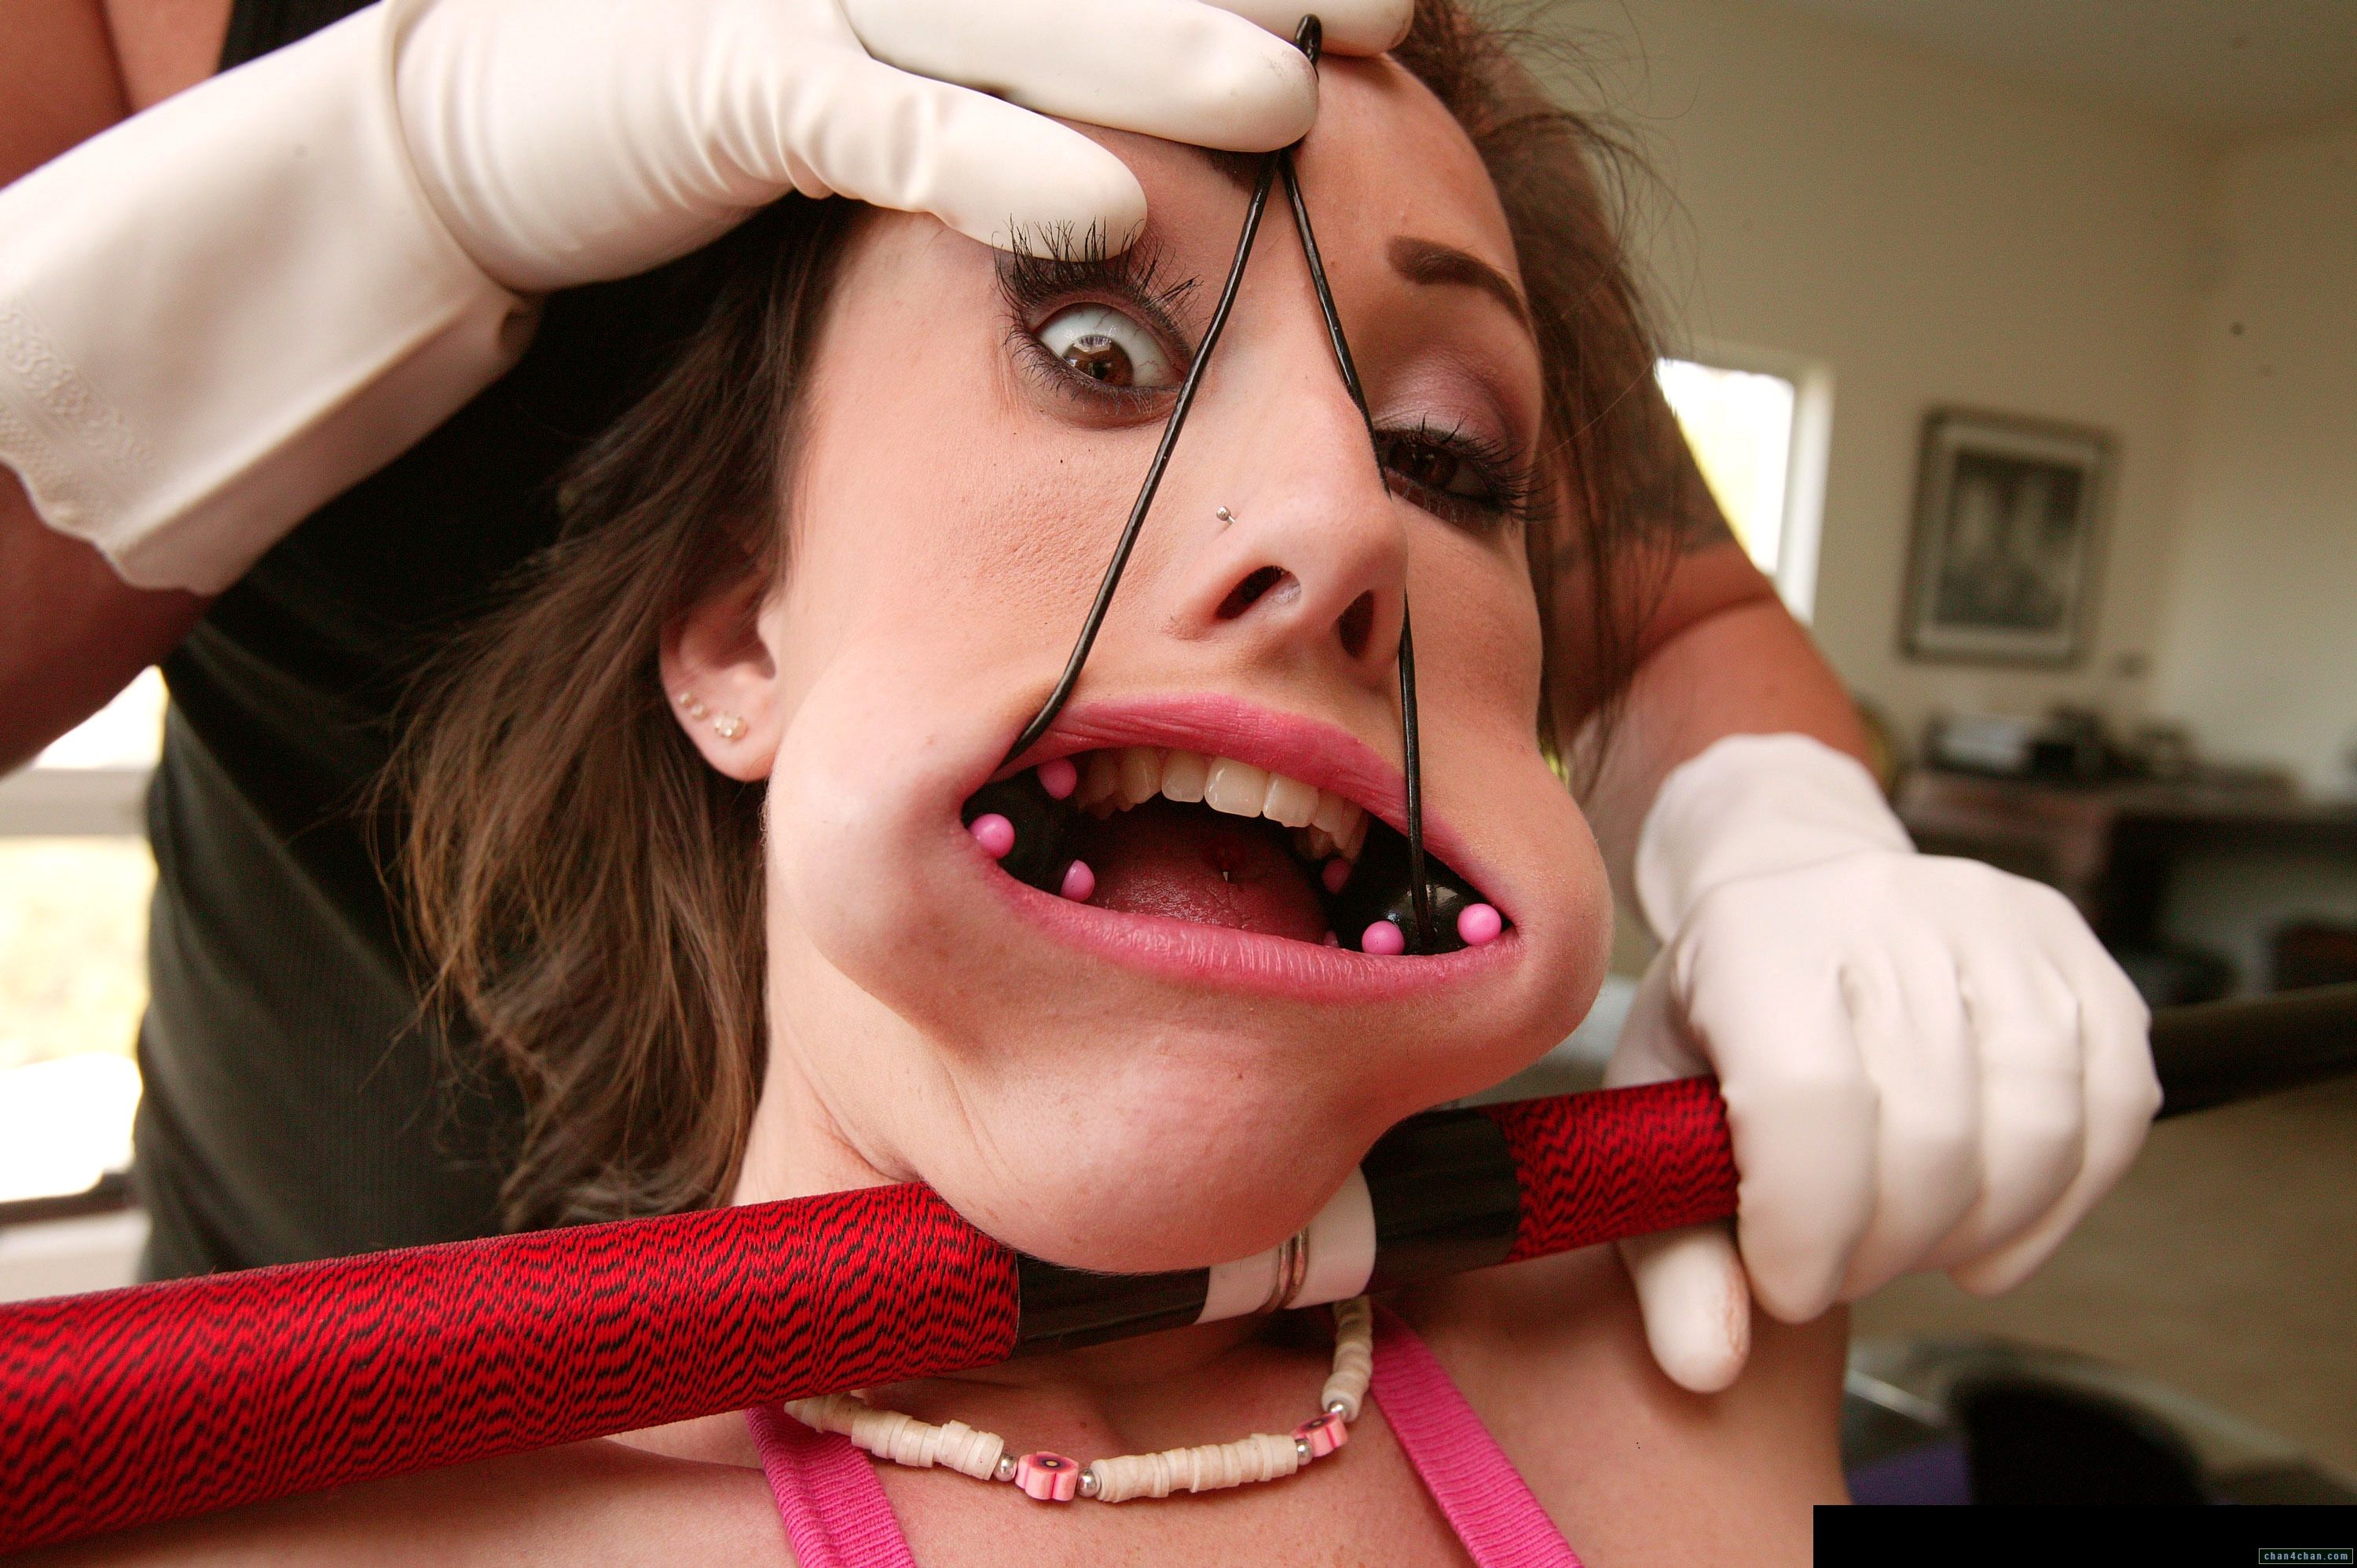 Sparkles reccomend dentist fetish torture female patient